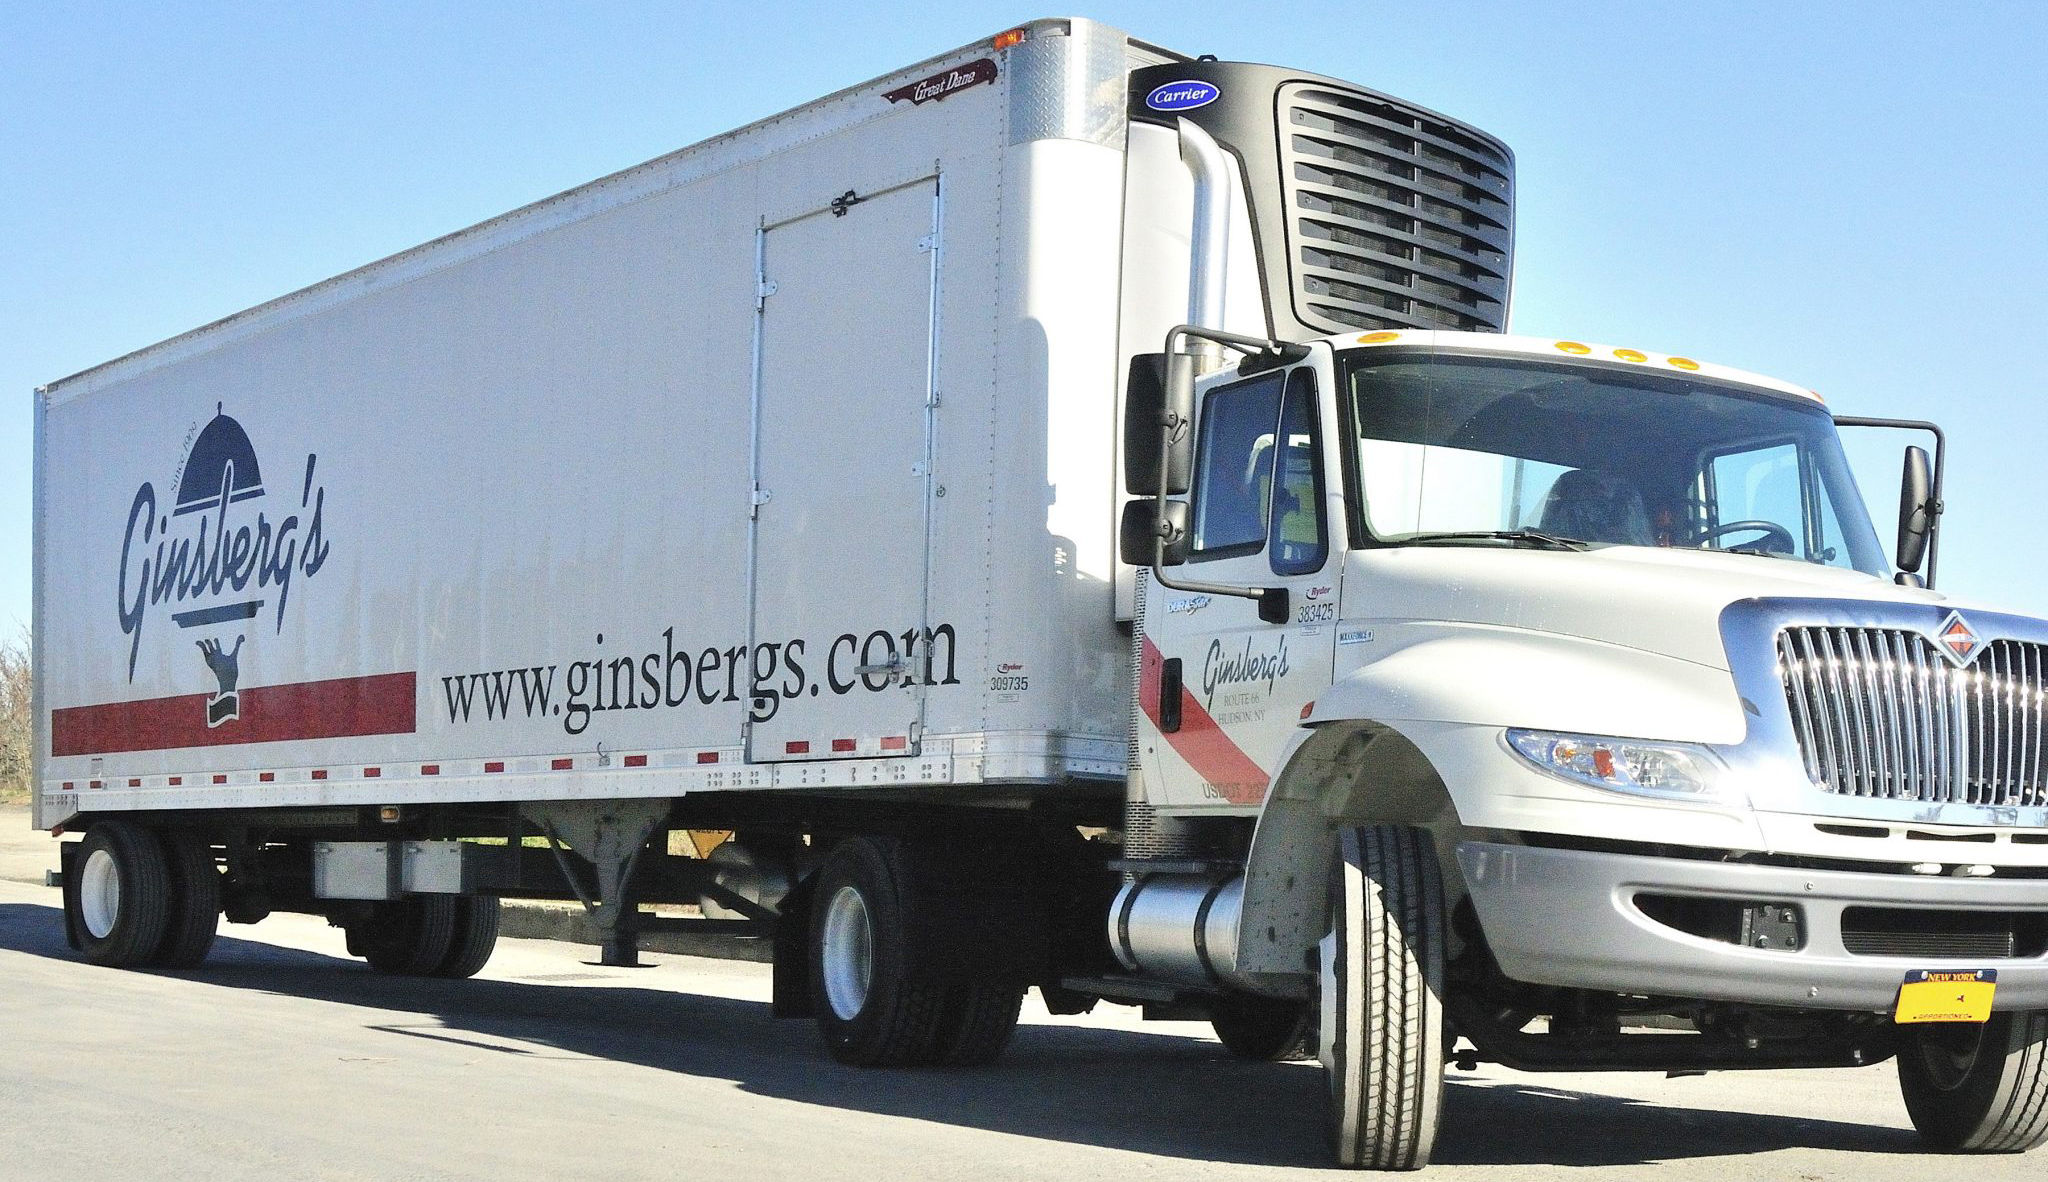 Ginsberg's Truck